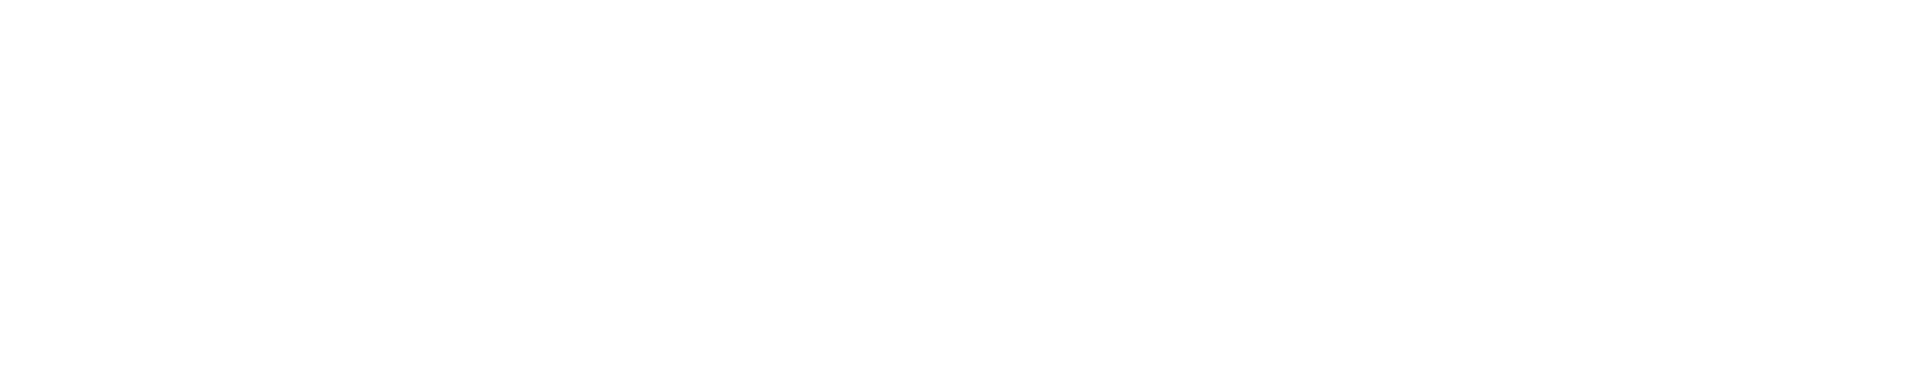 nello-records-logo